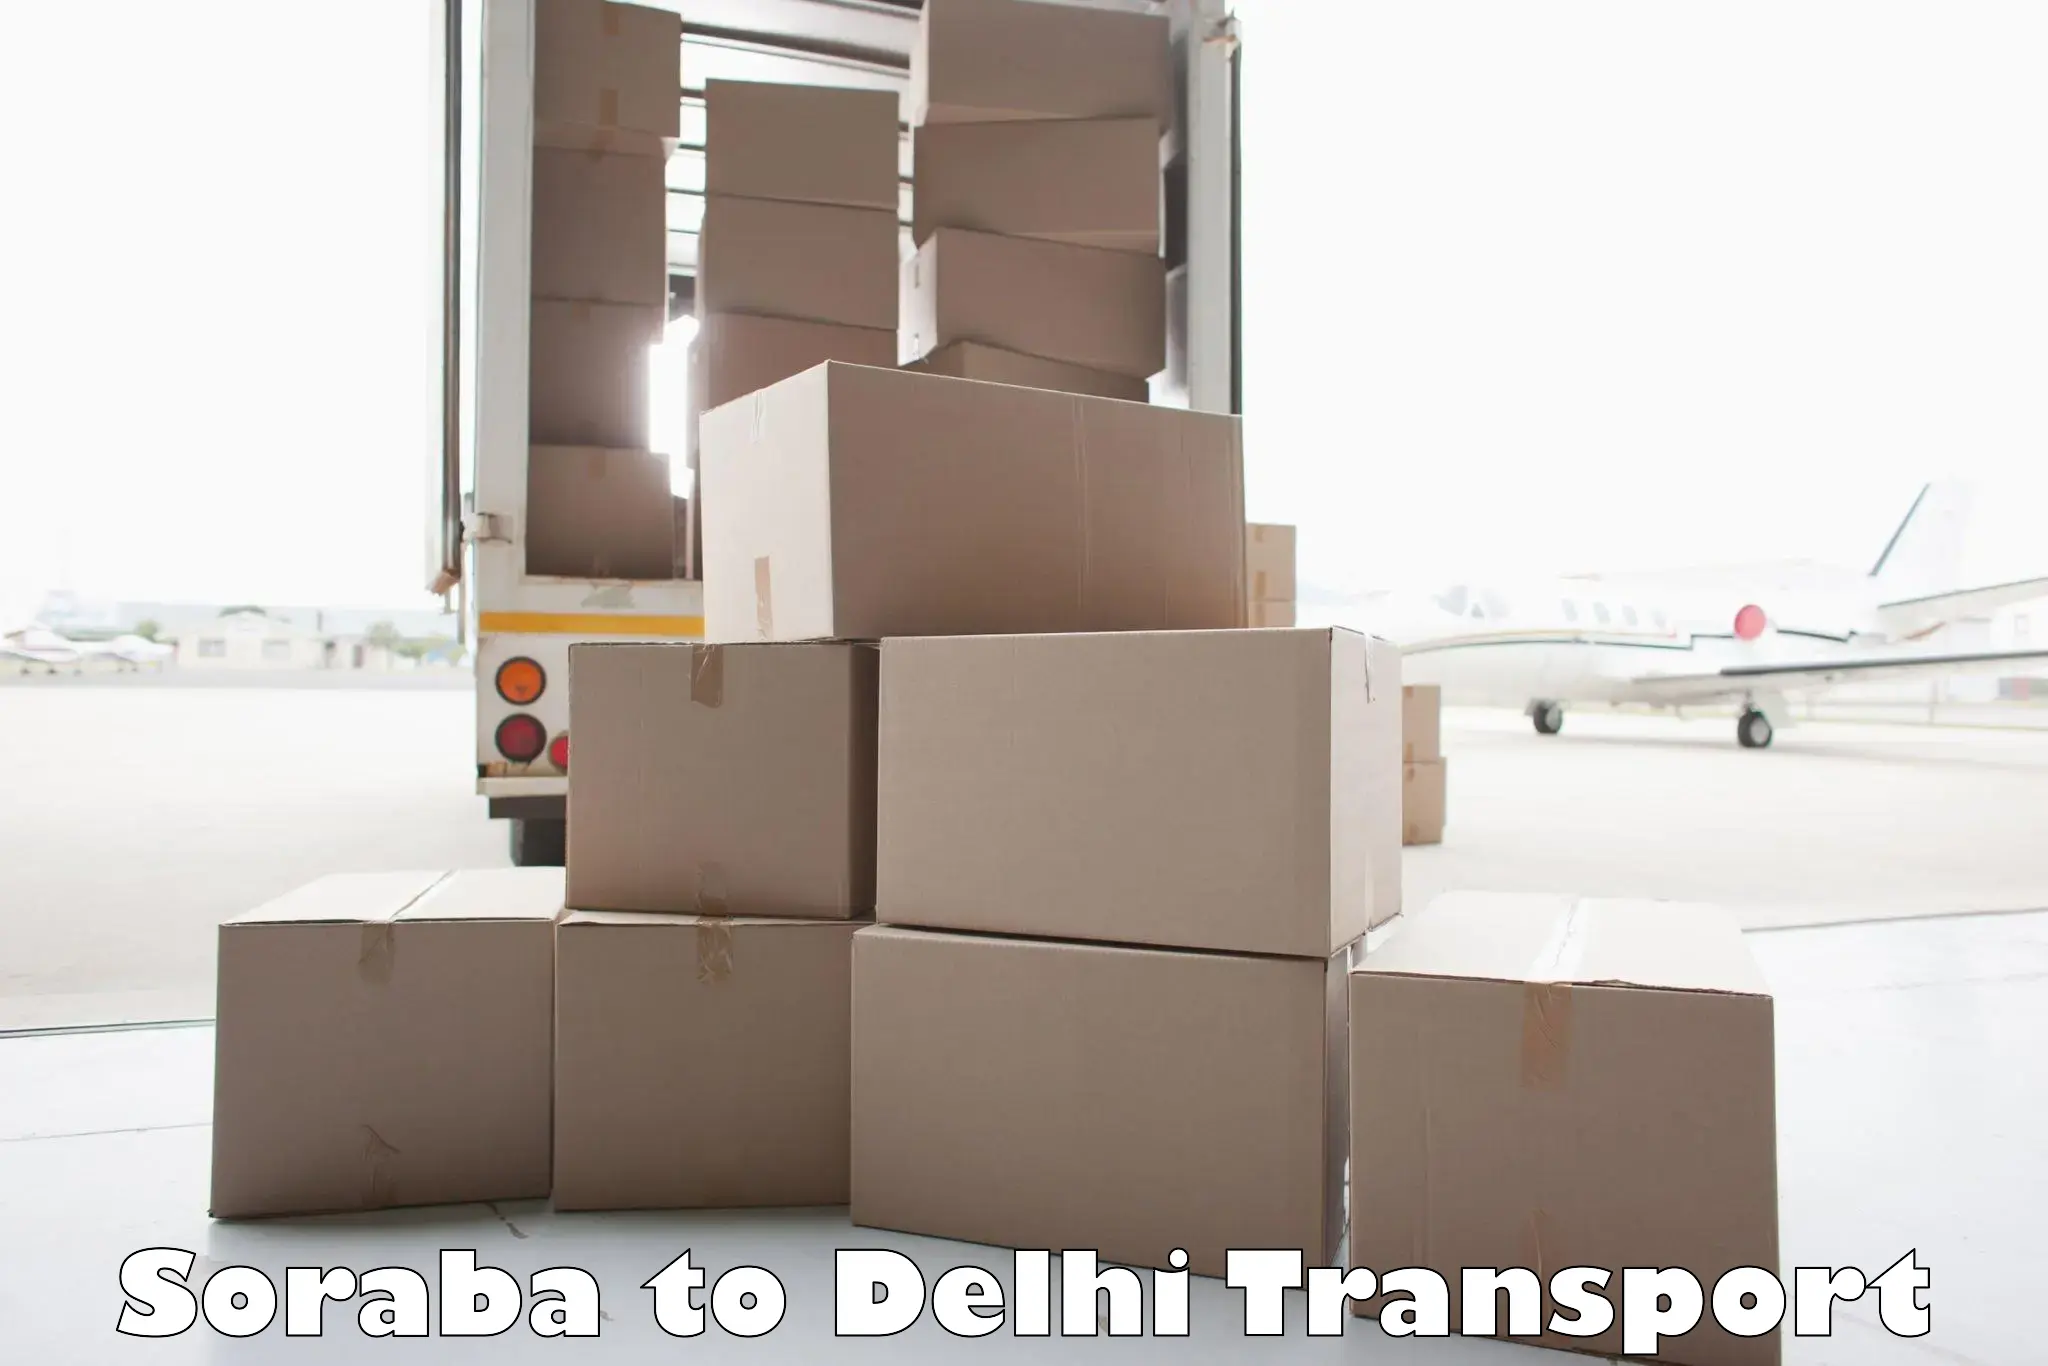 Land transport services Soraba to East Delhi